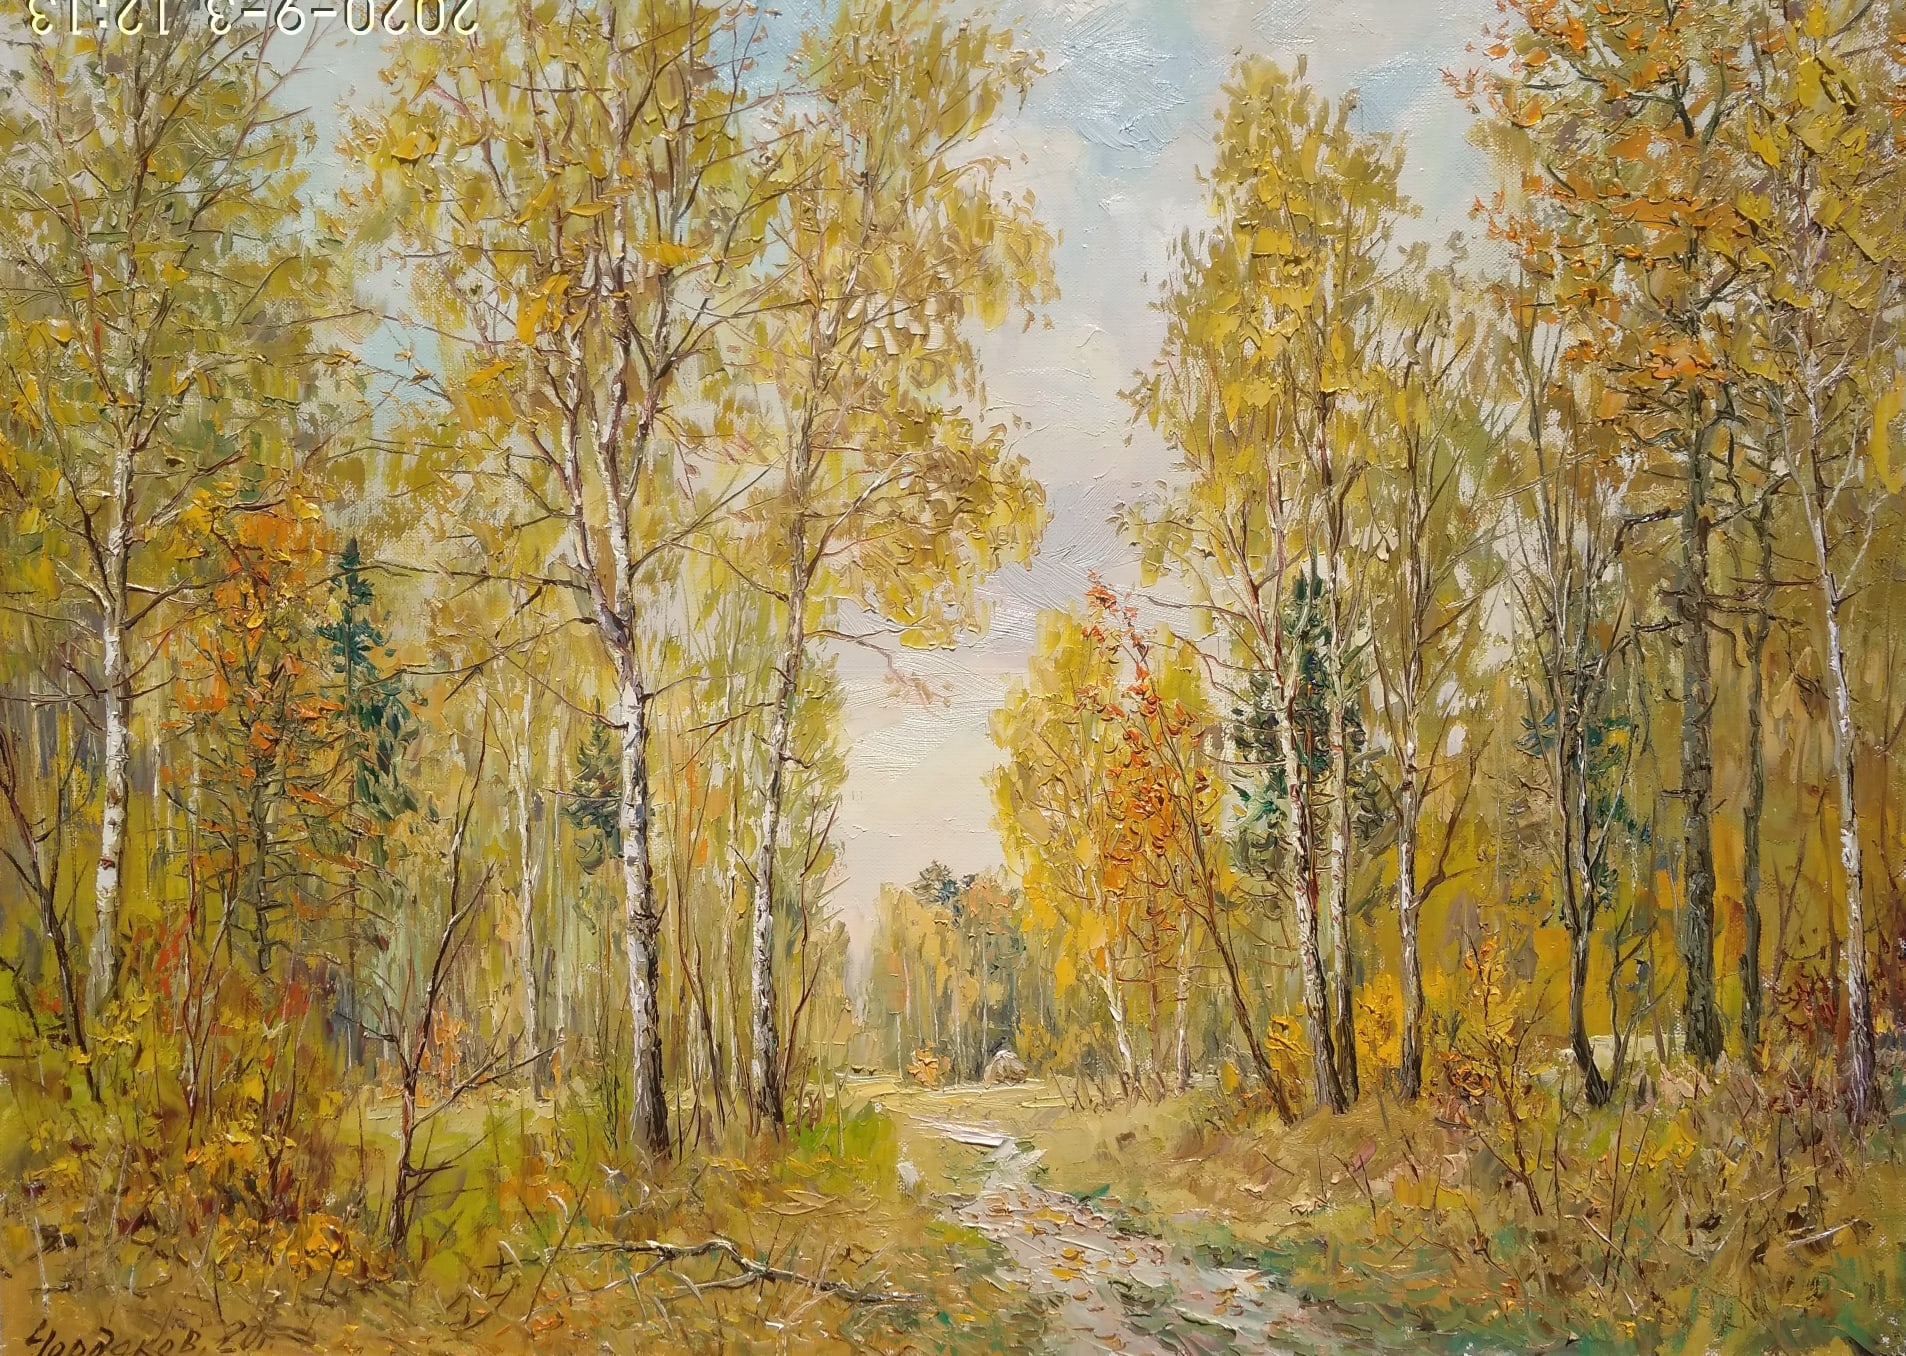 Quiet Autumn - 1, Vyacheslav Cherdakov, 买画 油